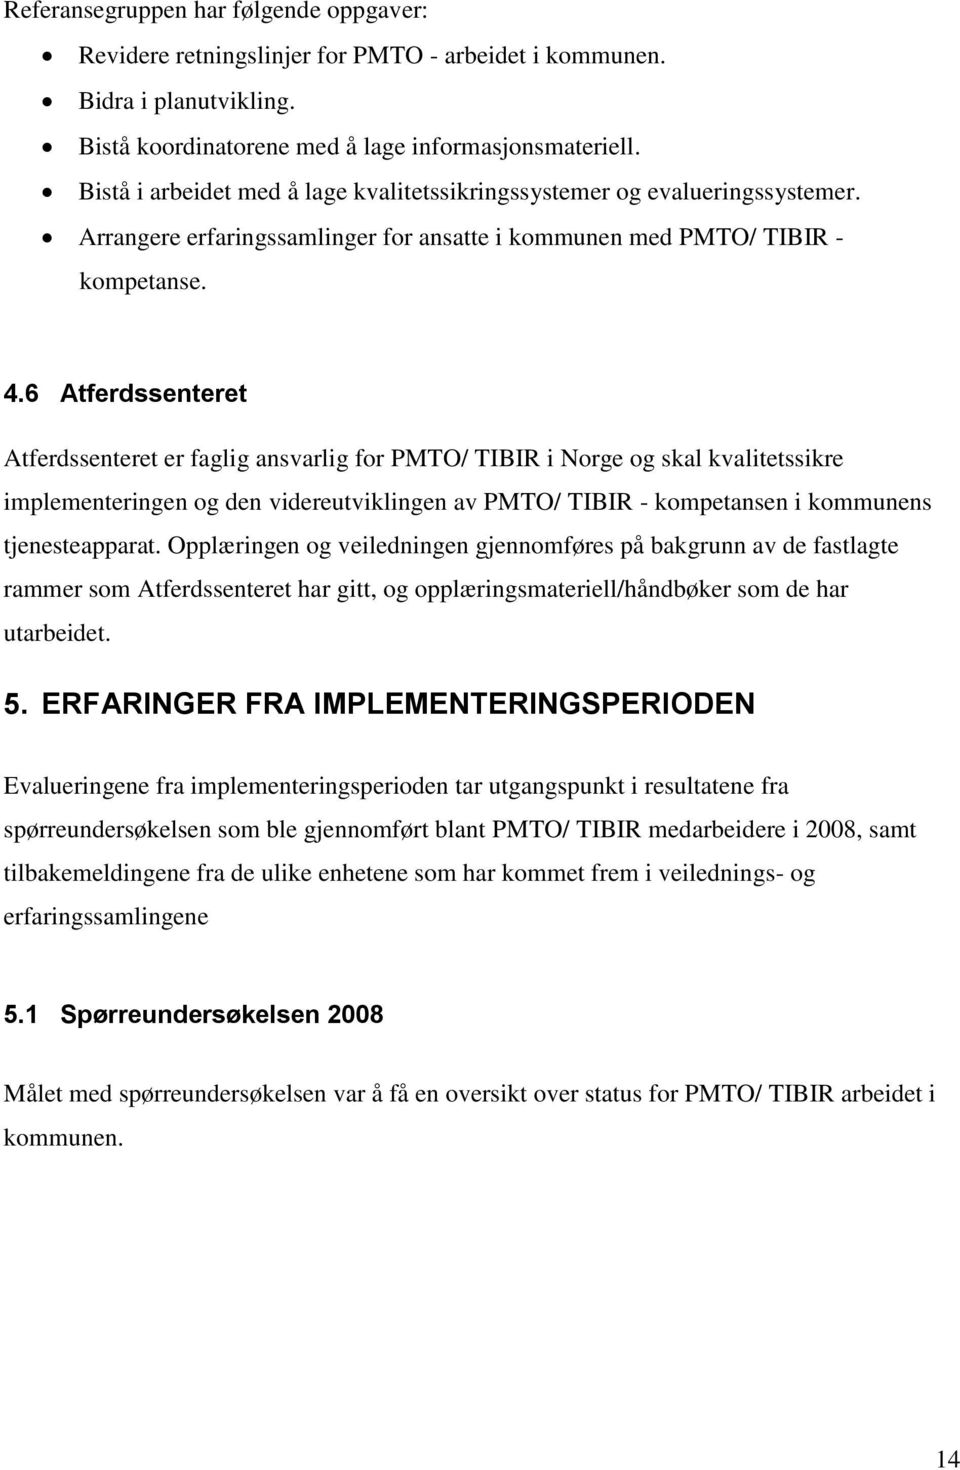 6 Atferdssenteret Atferdssenteret er faglig ansvarlig for PMTO/ TIBIR i Norge og skal kvalitetssikre implementeringen og den videreutviklingen av PMTO/ TIBIR - kompetansen i kommunens tjenesteapparat.